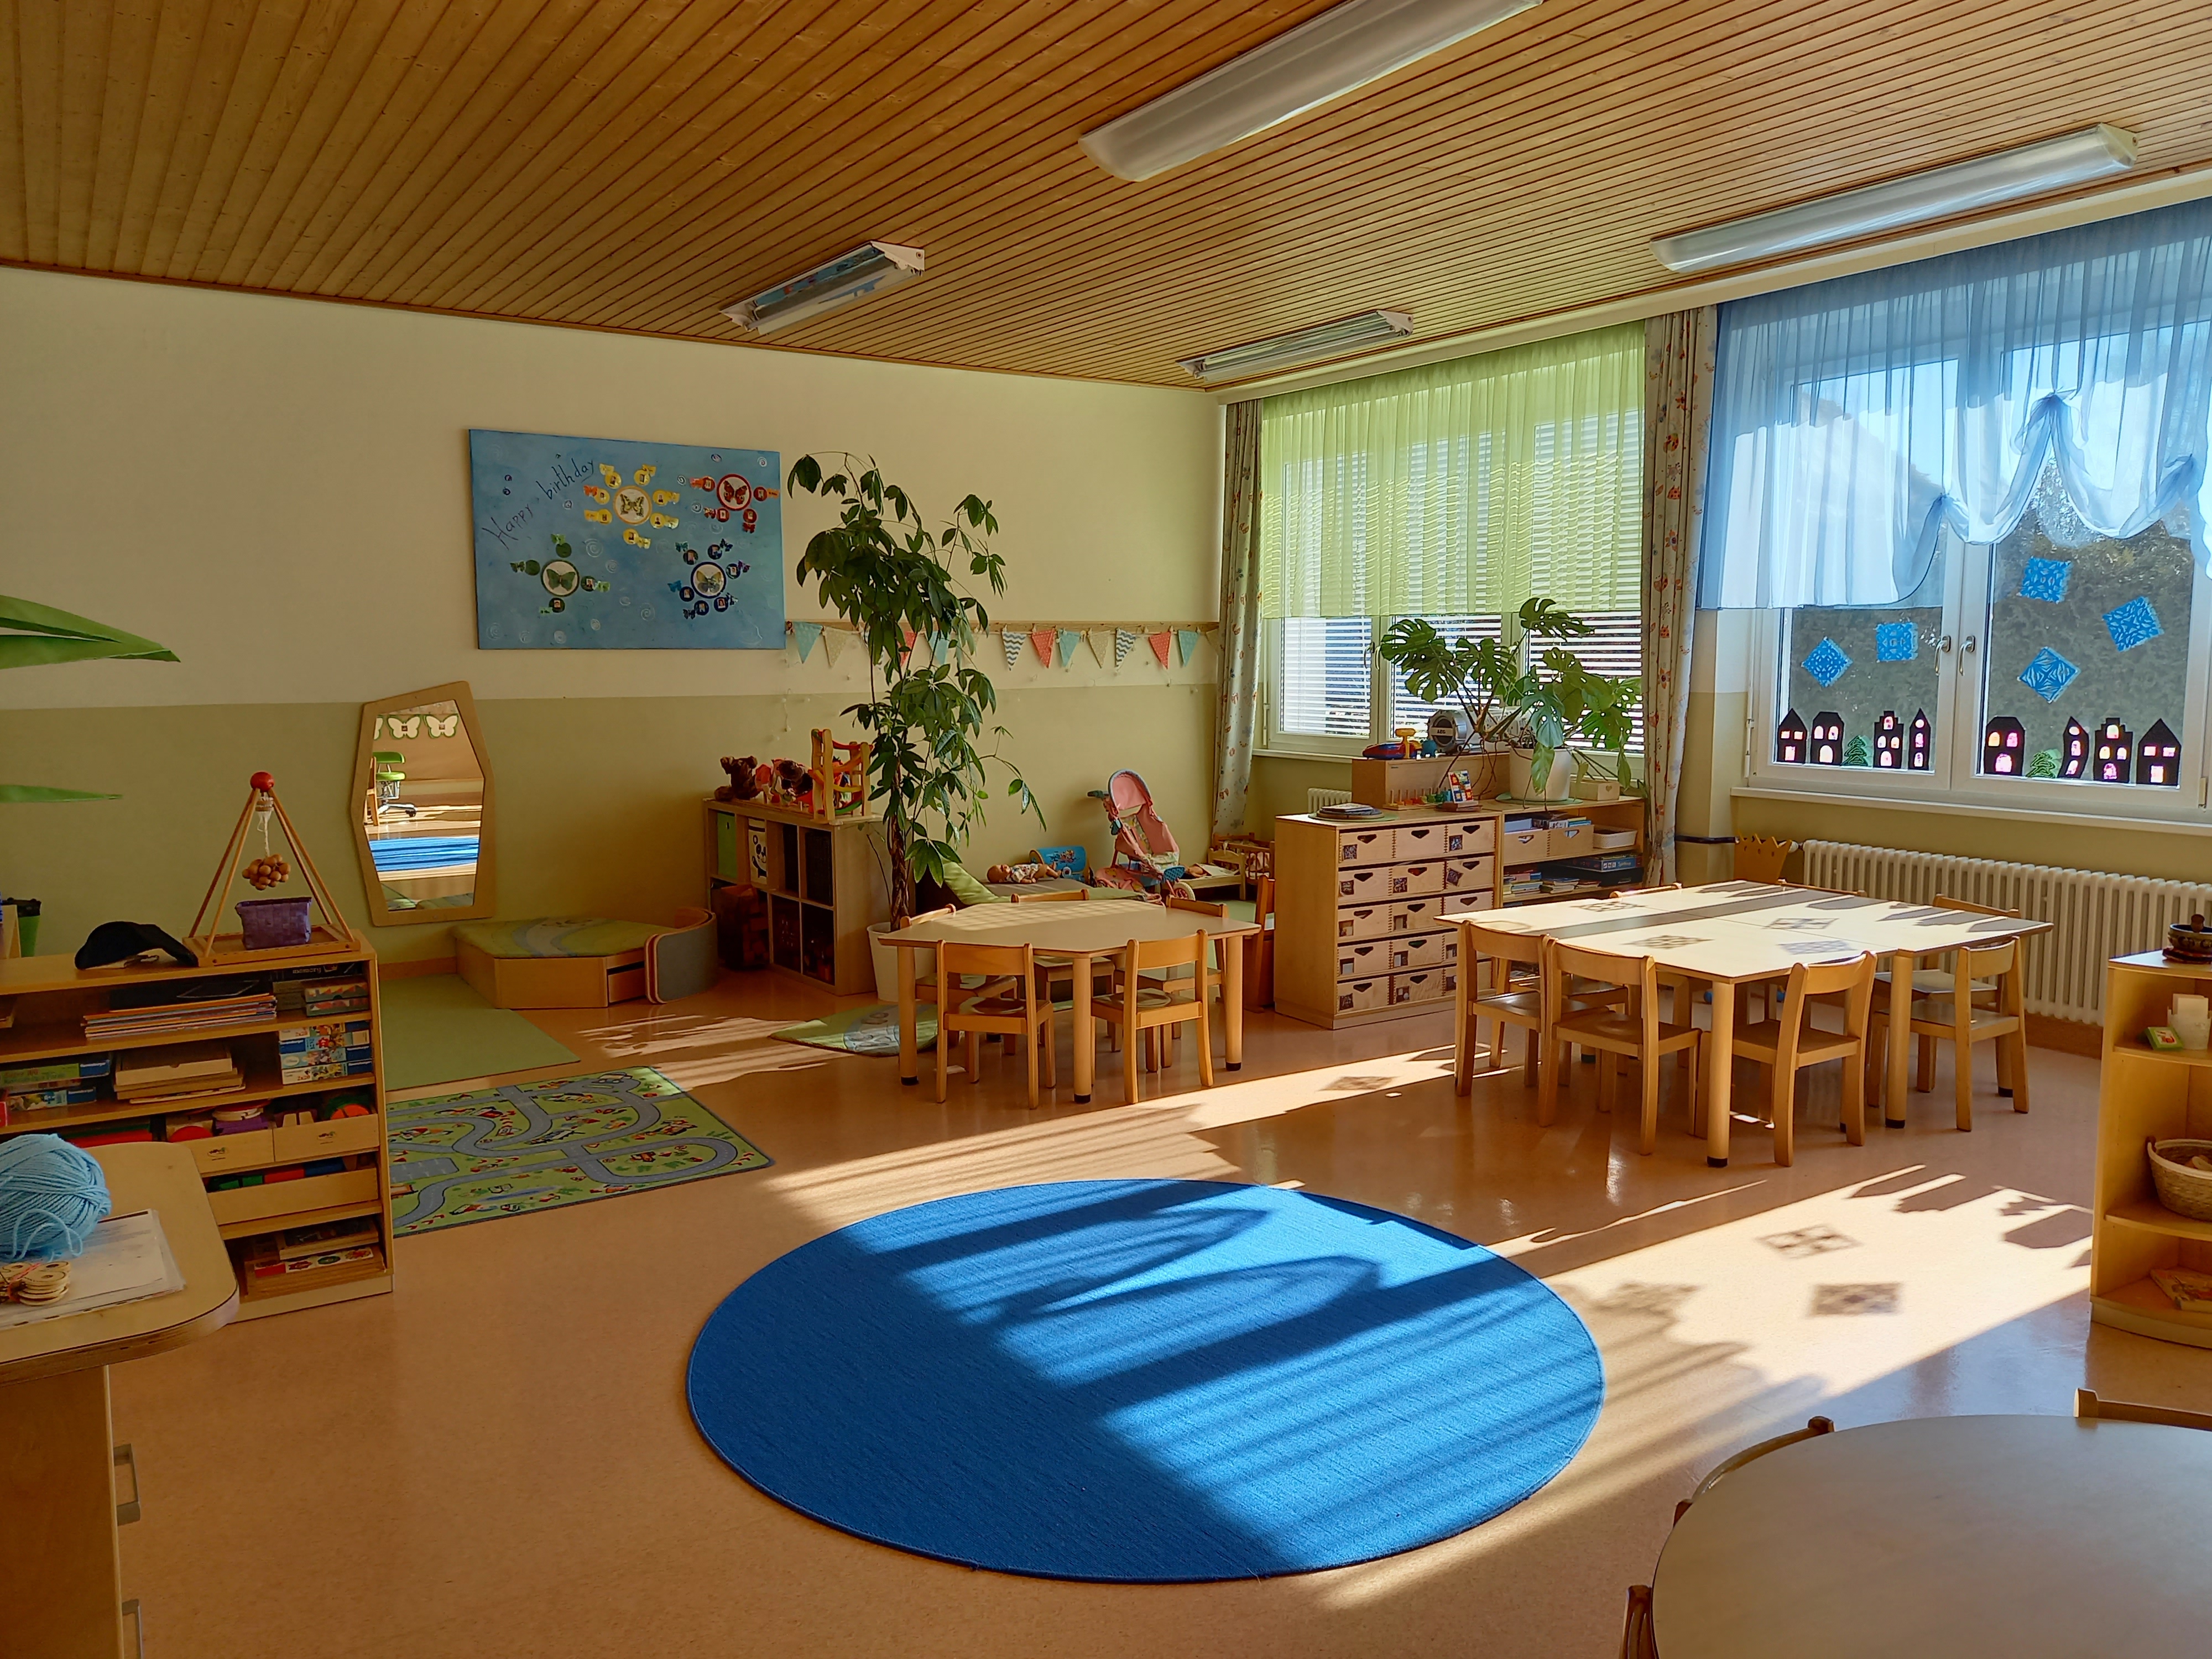 Gruppenraum
© Kindergarten Jakling